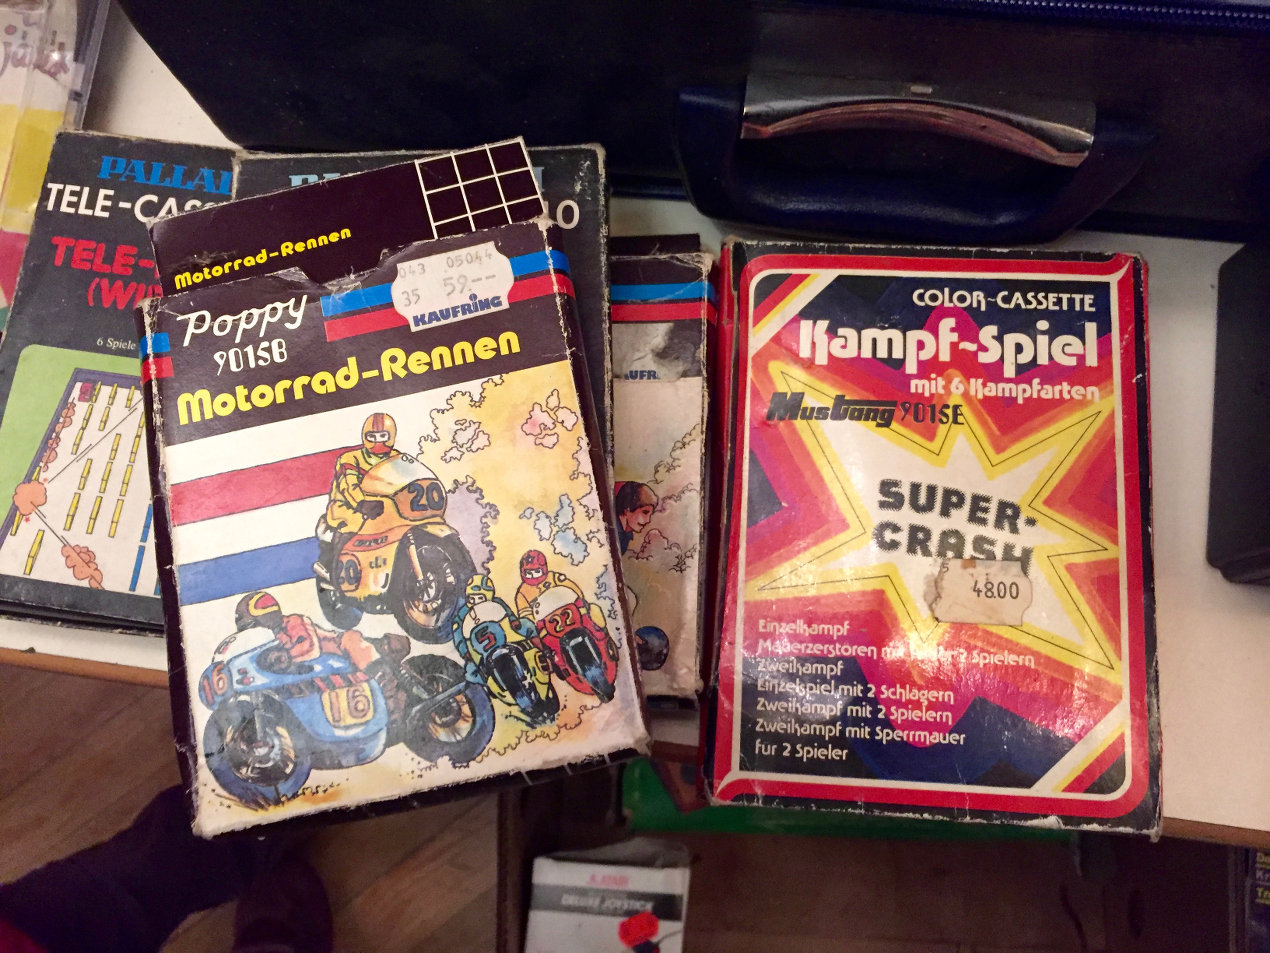 Poppy Motorrad-Rennen und Kampf-Spiel mit 6 Kampfarten. (Bild: André Eymann)